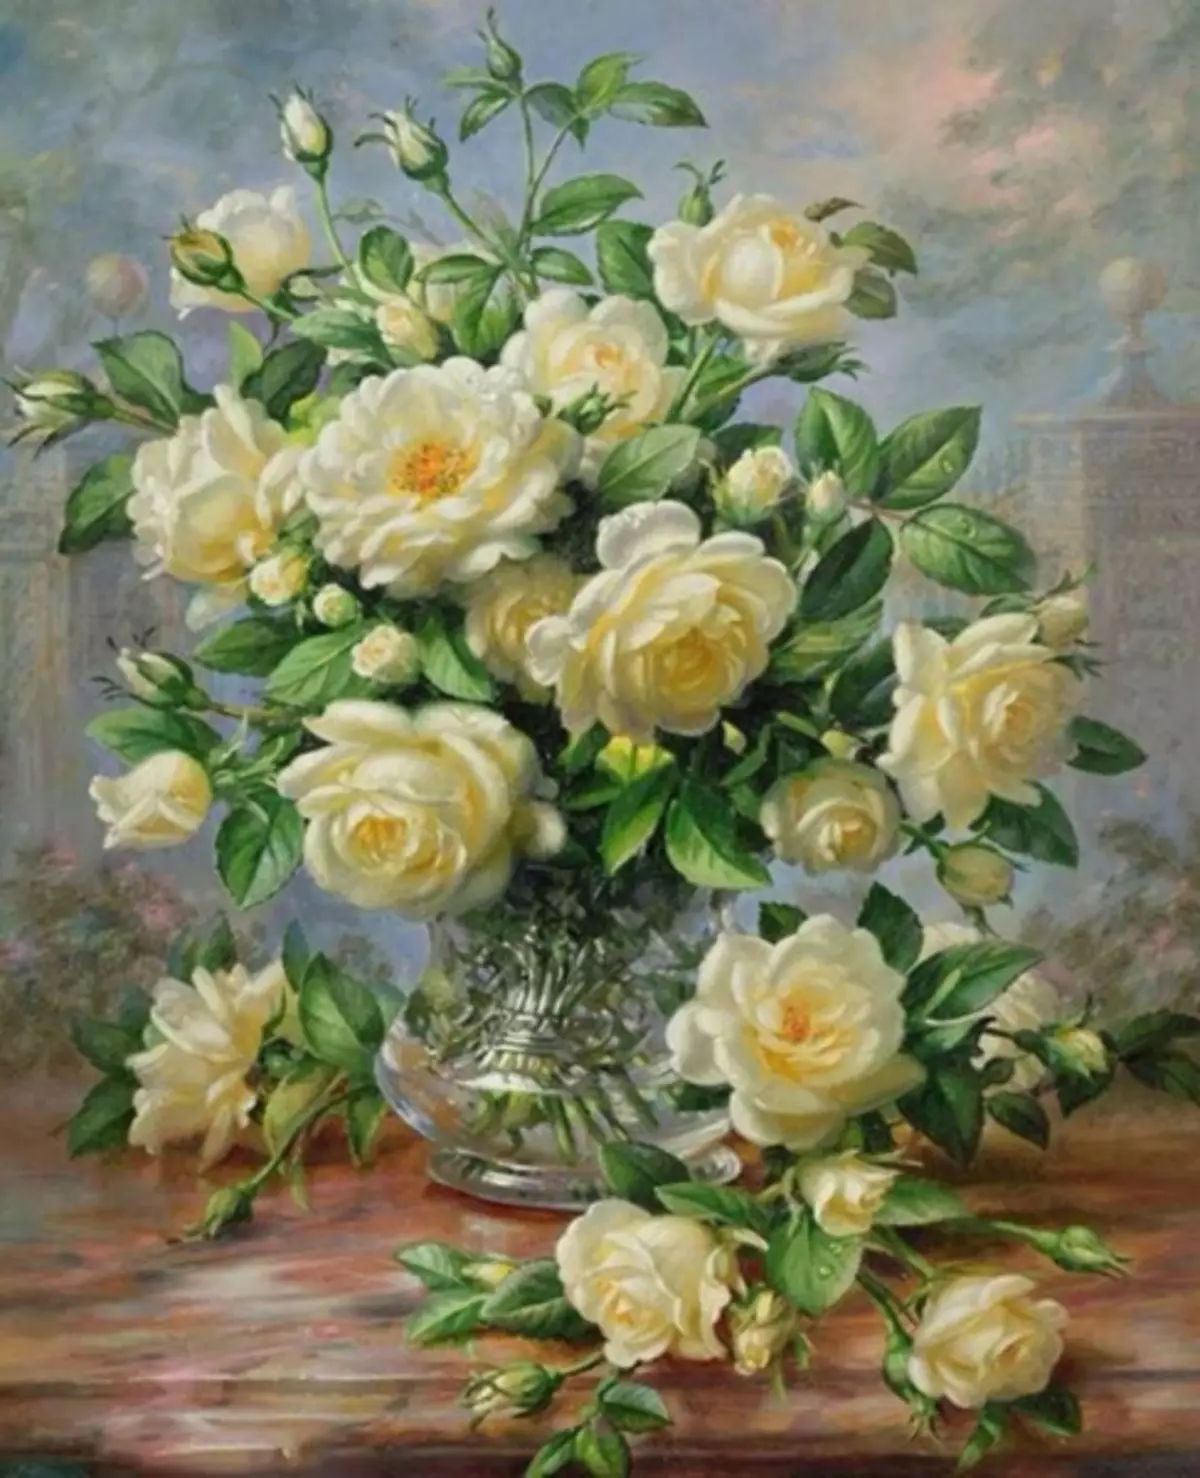 Vez za ružu: setovi u košarici, bijeli buket u vazi, djevojka za početnike, triptih i leptiri